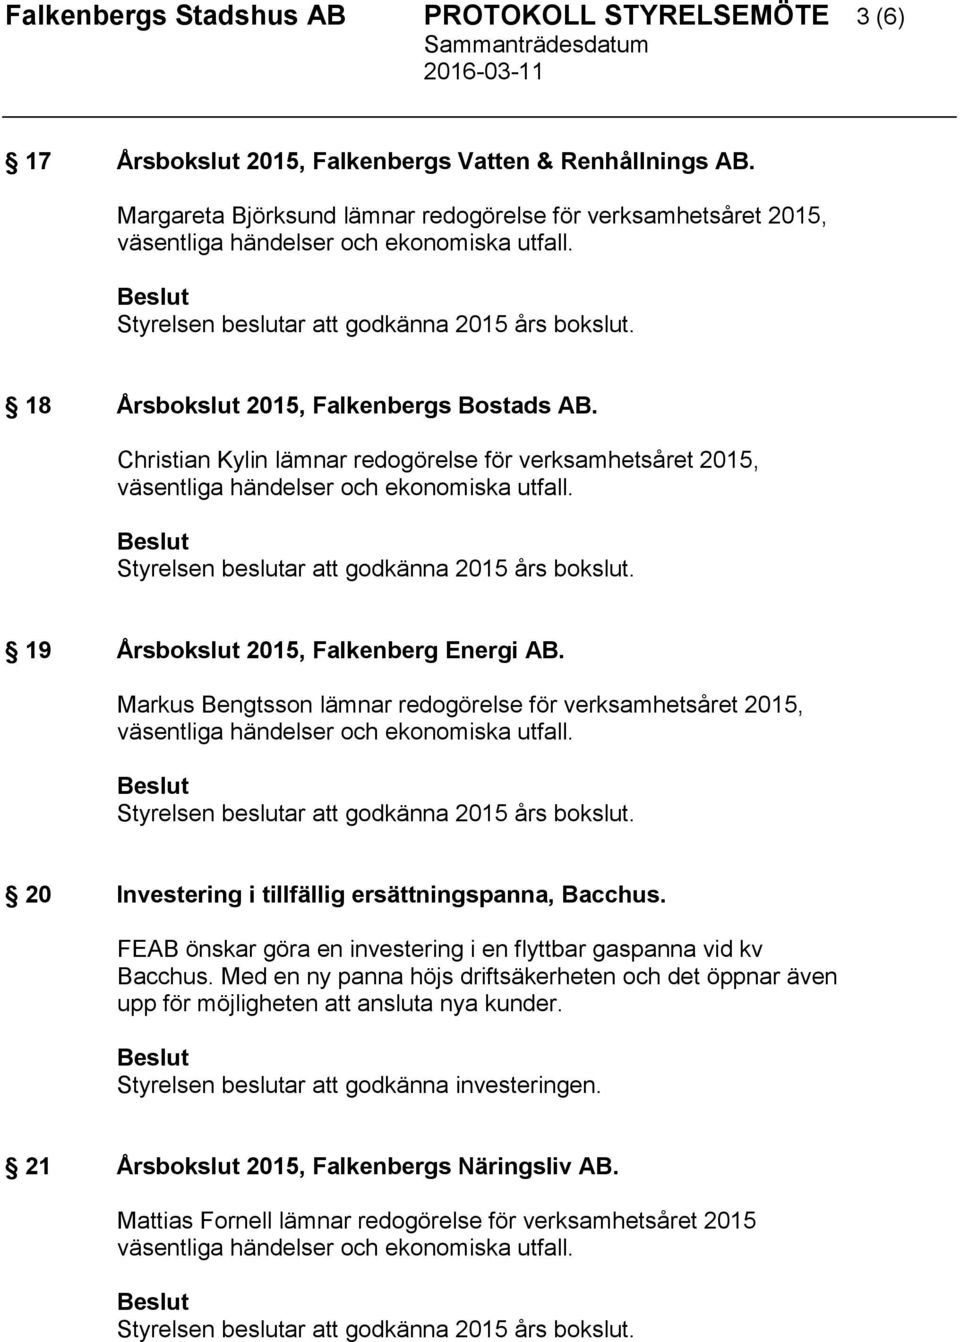 18 Årsbokslut 2015, Falkenbergs Bostads AB. Christian Kylin lämnar redogörelse för verksamhetsåret 2015, väsentliga händelser och ekonomiska utfall. Styrelsen beslutar att godkänna 2015 års bokslut.